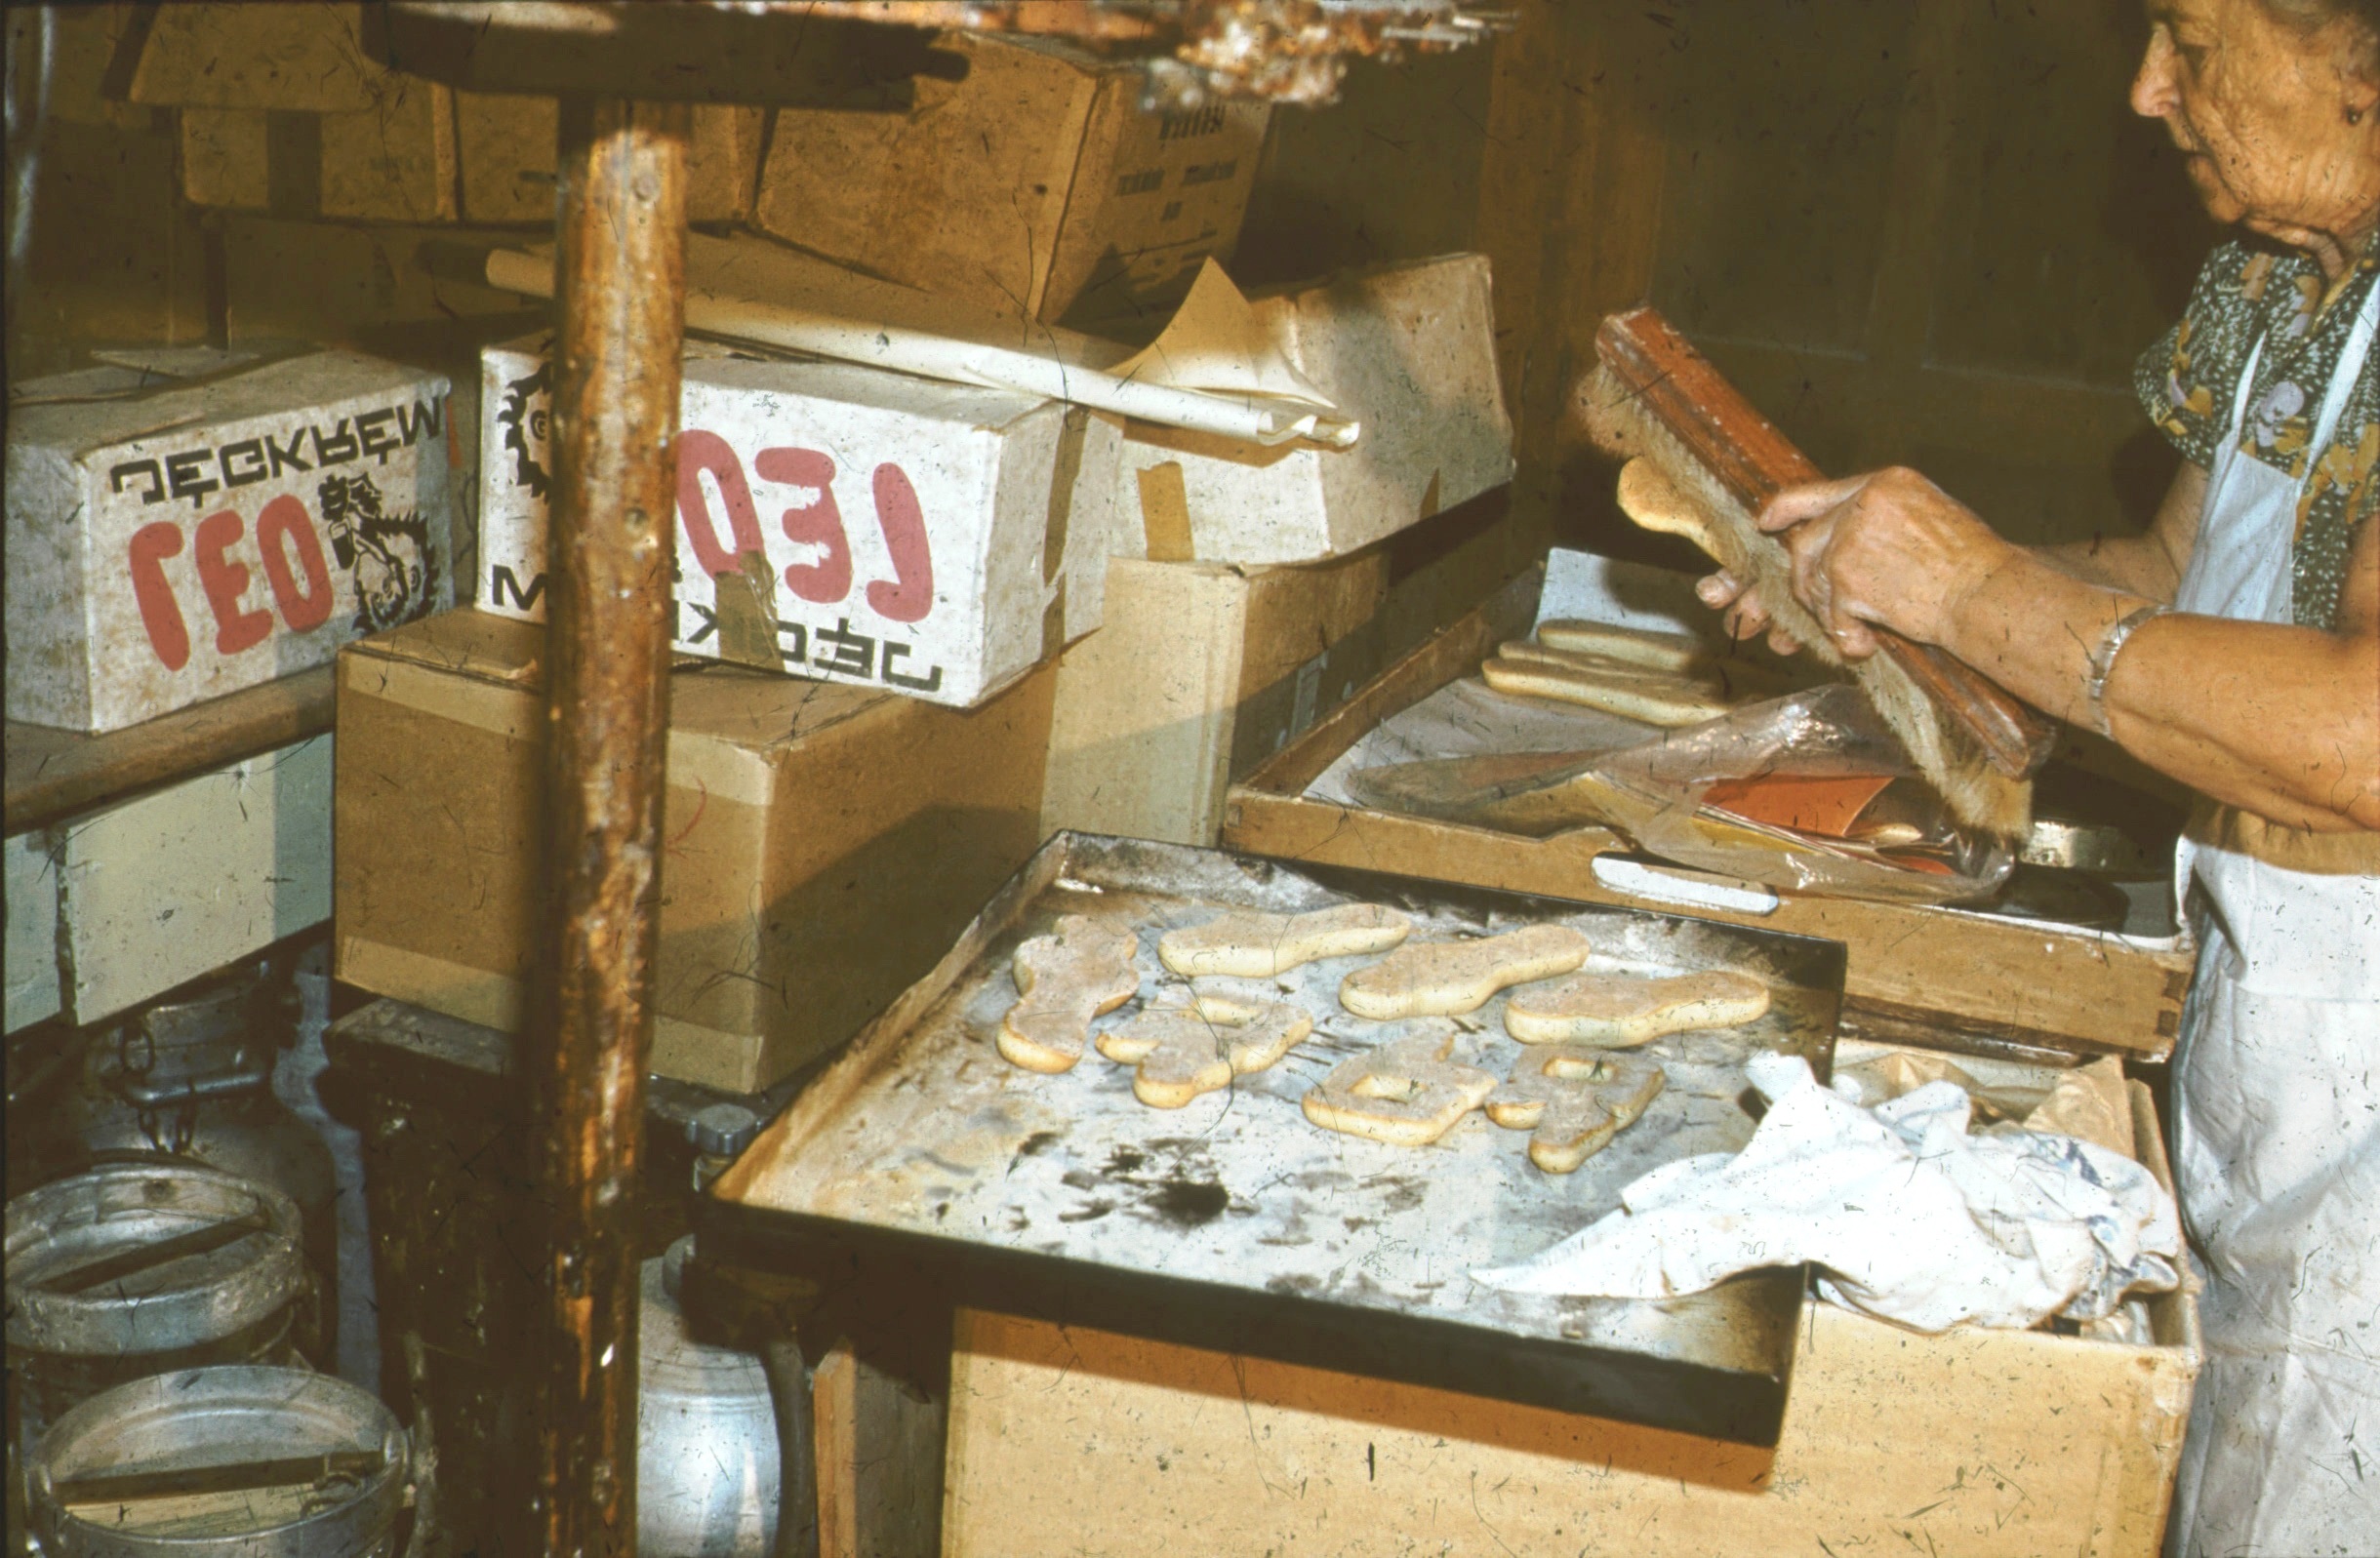 A kisült tészta lekefélése, a liszt eltávolítása (Rippl-Rónai Múzeum RR-F)